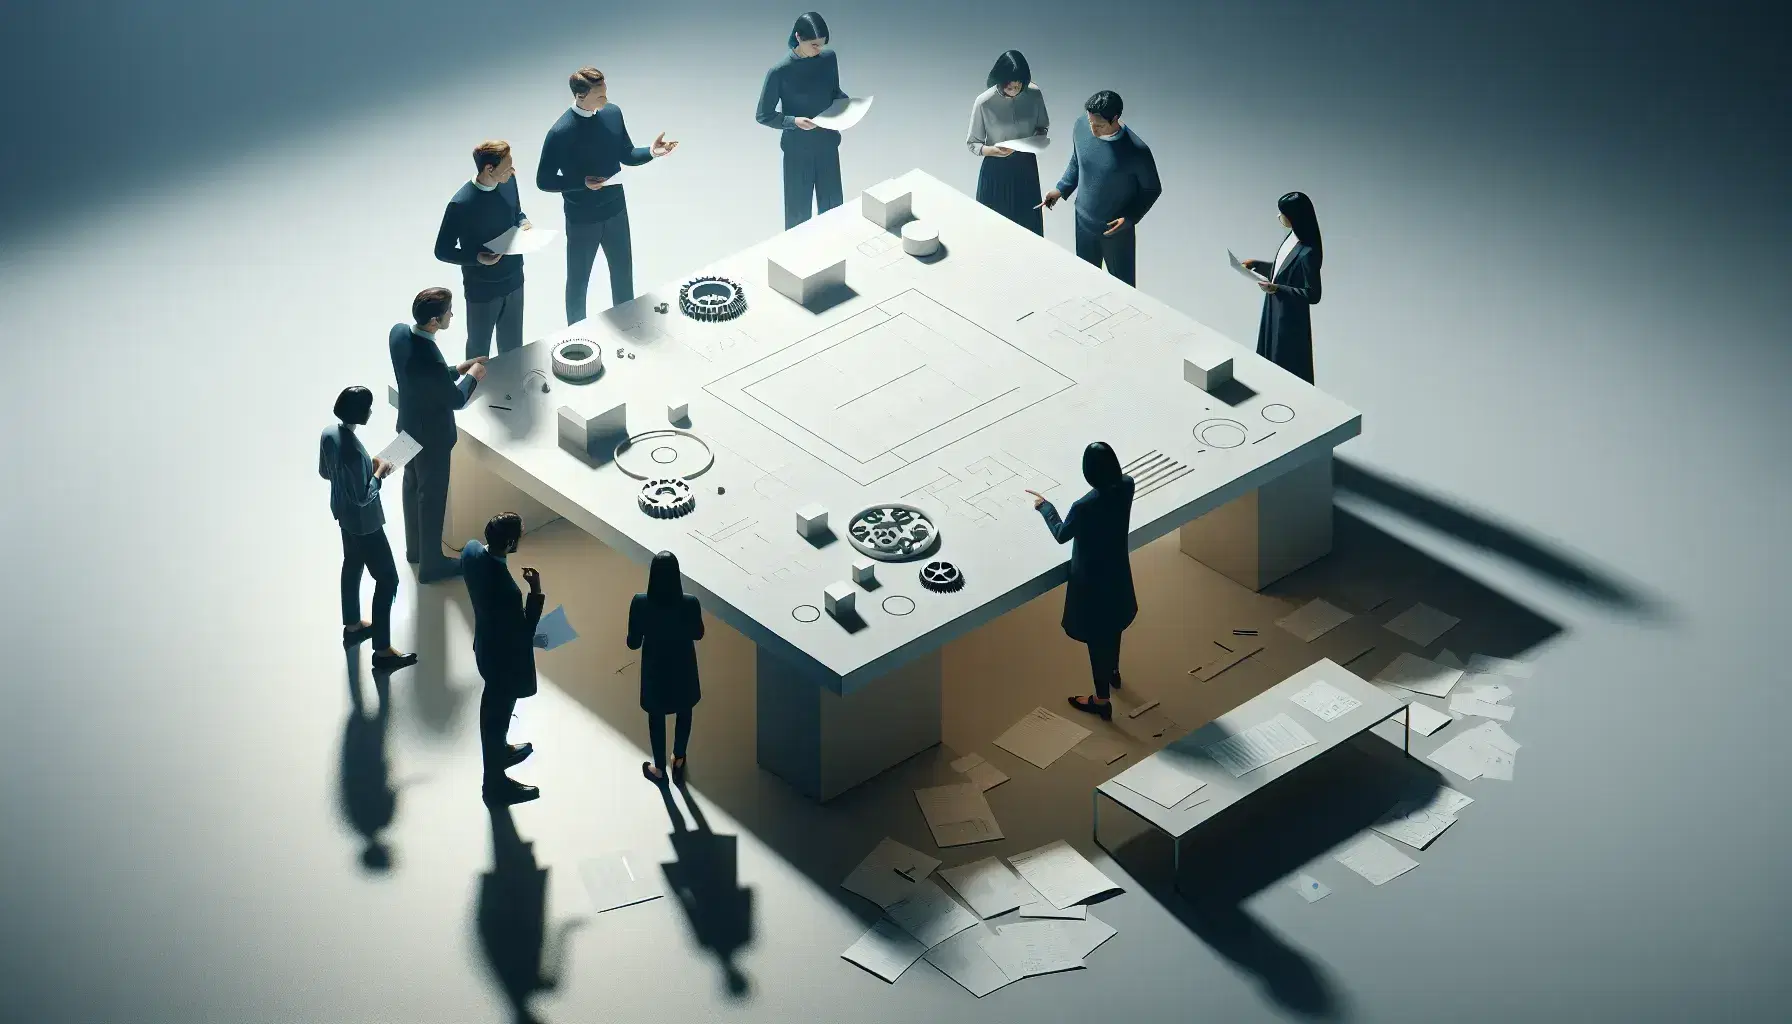 Grupo de cinco profesionales colaborando alrededor de una mesa con papeles, un tablero blanco y modelos de engranajes, en un entorno de oficina iluminado.